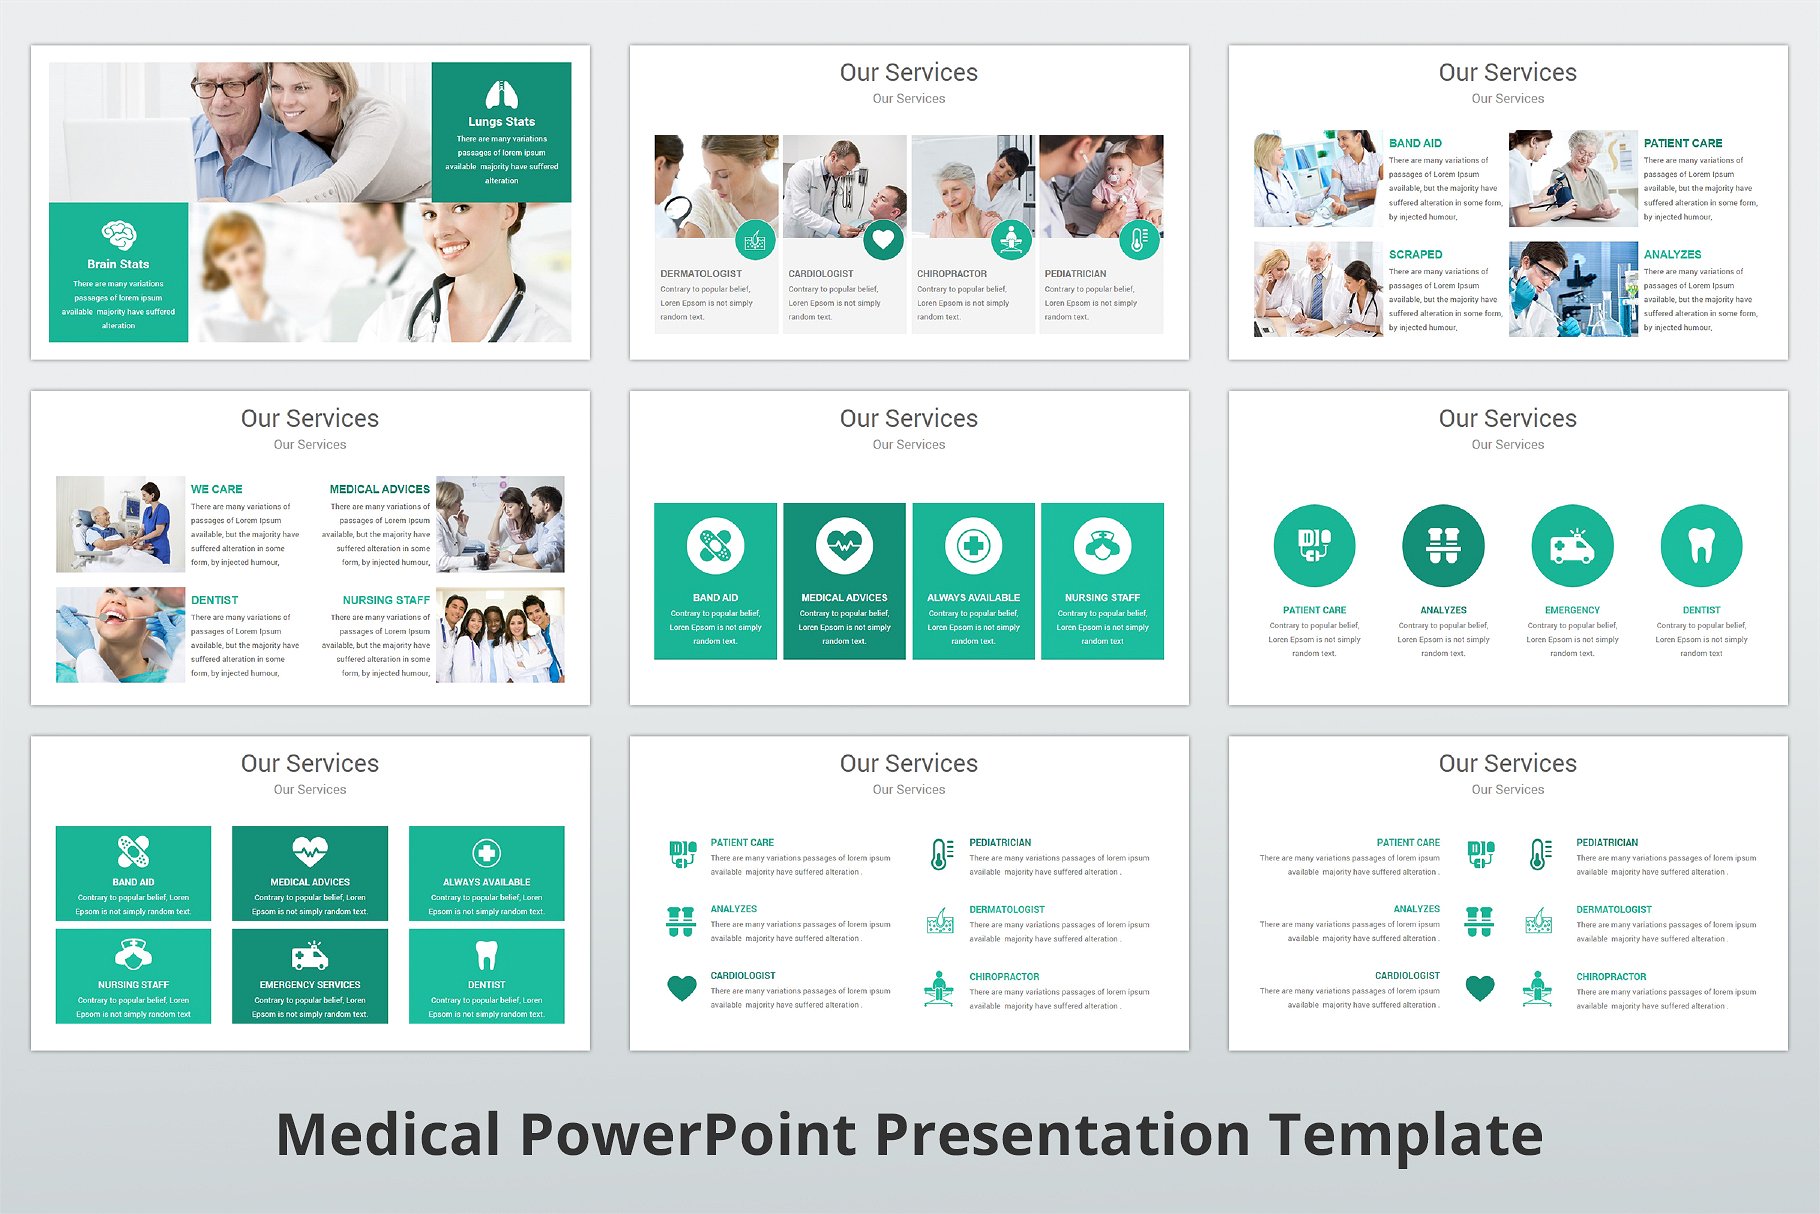 高品质医疗行业演示的PPT模板下载 Medical PowerPoint Template [pptx]插图(10)